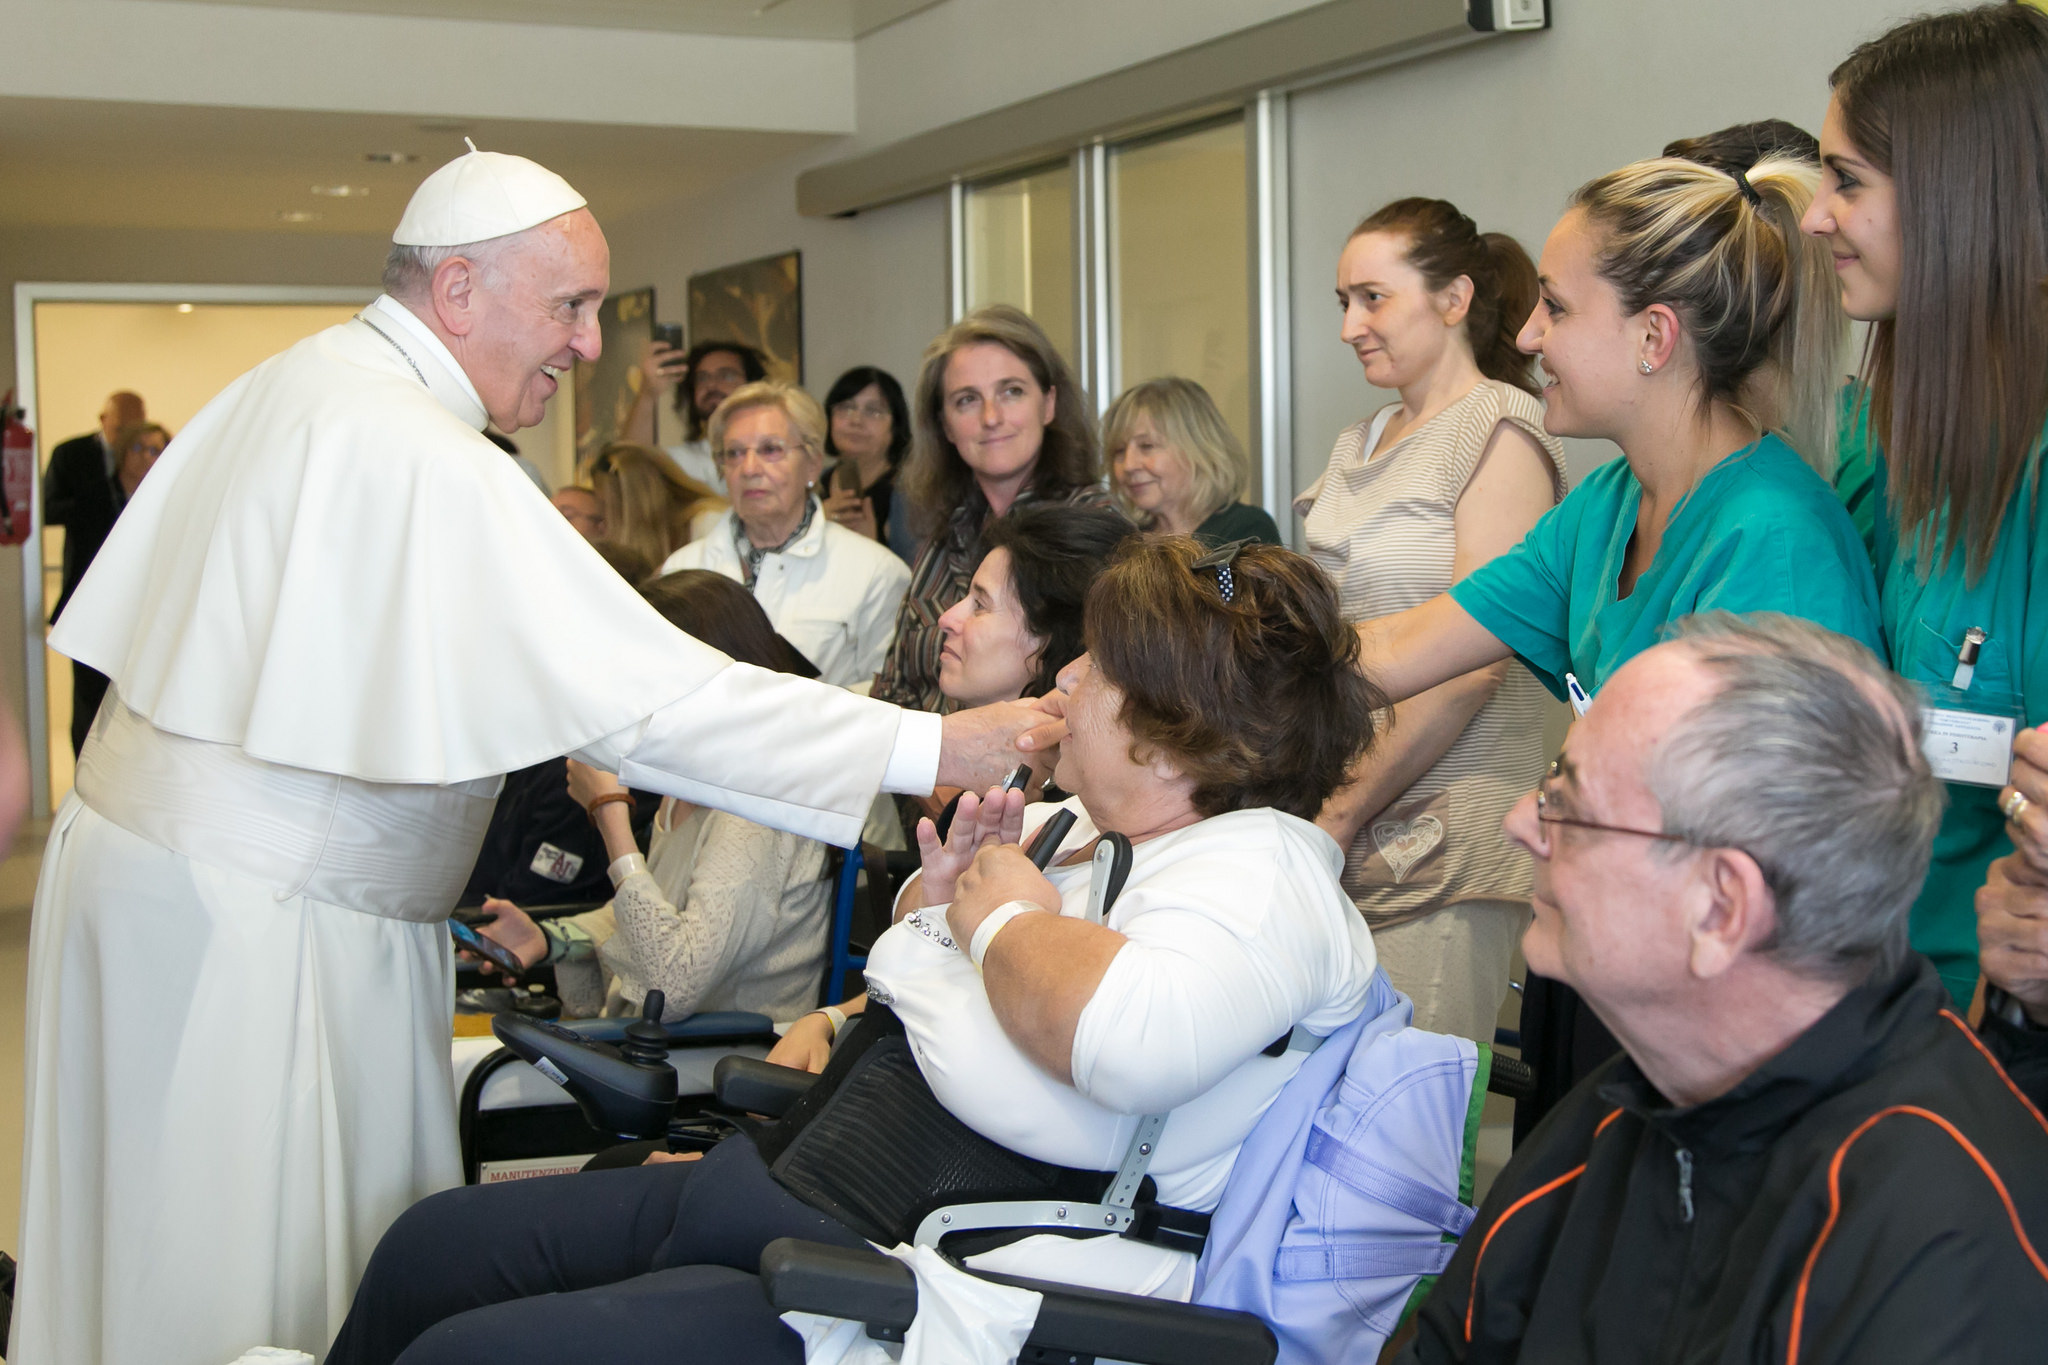 Il Papa in visita all'Ospedale Santa Lucia, centro d'eccellenza in Europa per la riabilitazione neuromotoria, incontra i pazienti